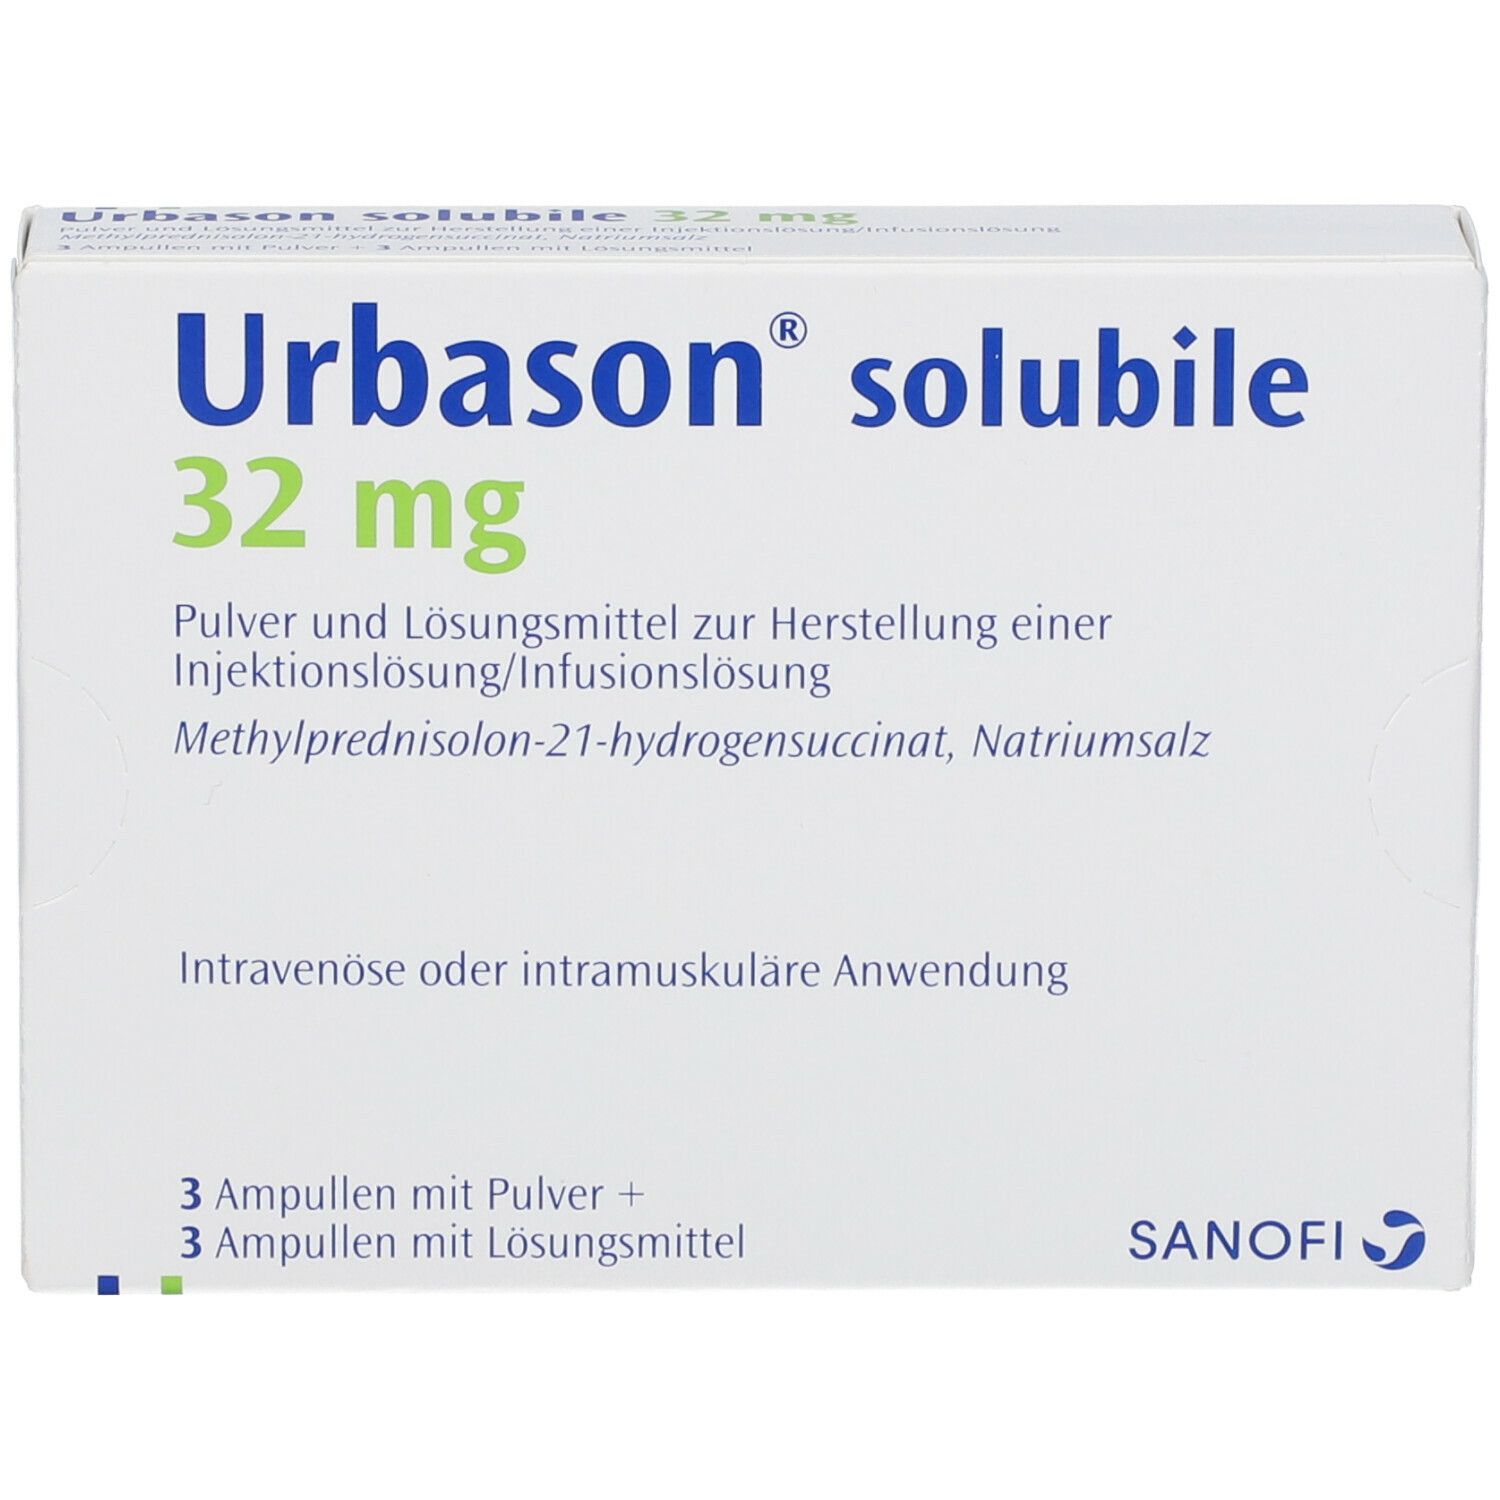 Urbason® solubile 32 mg